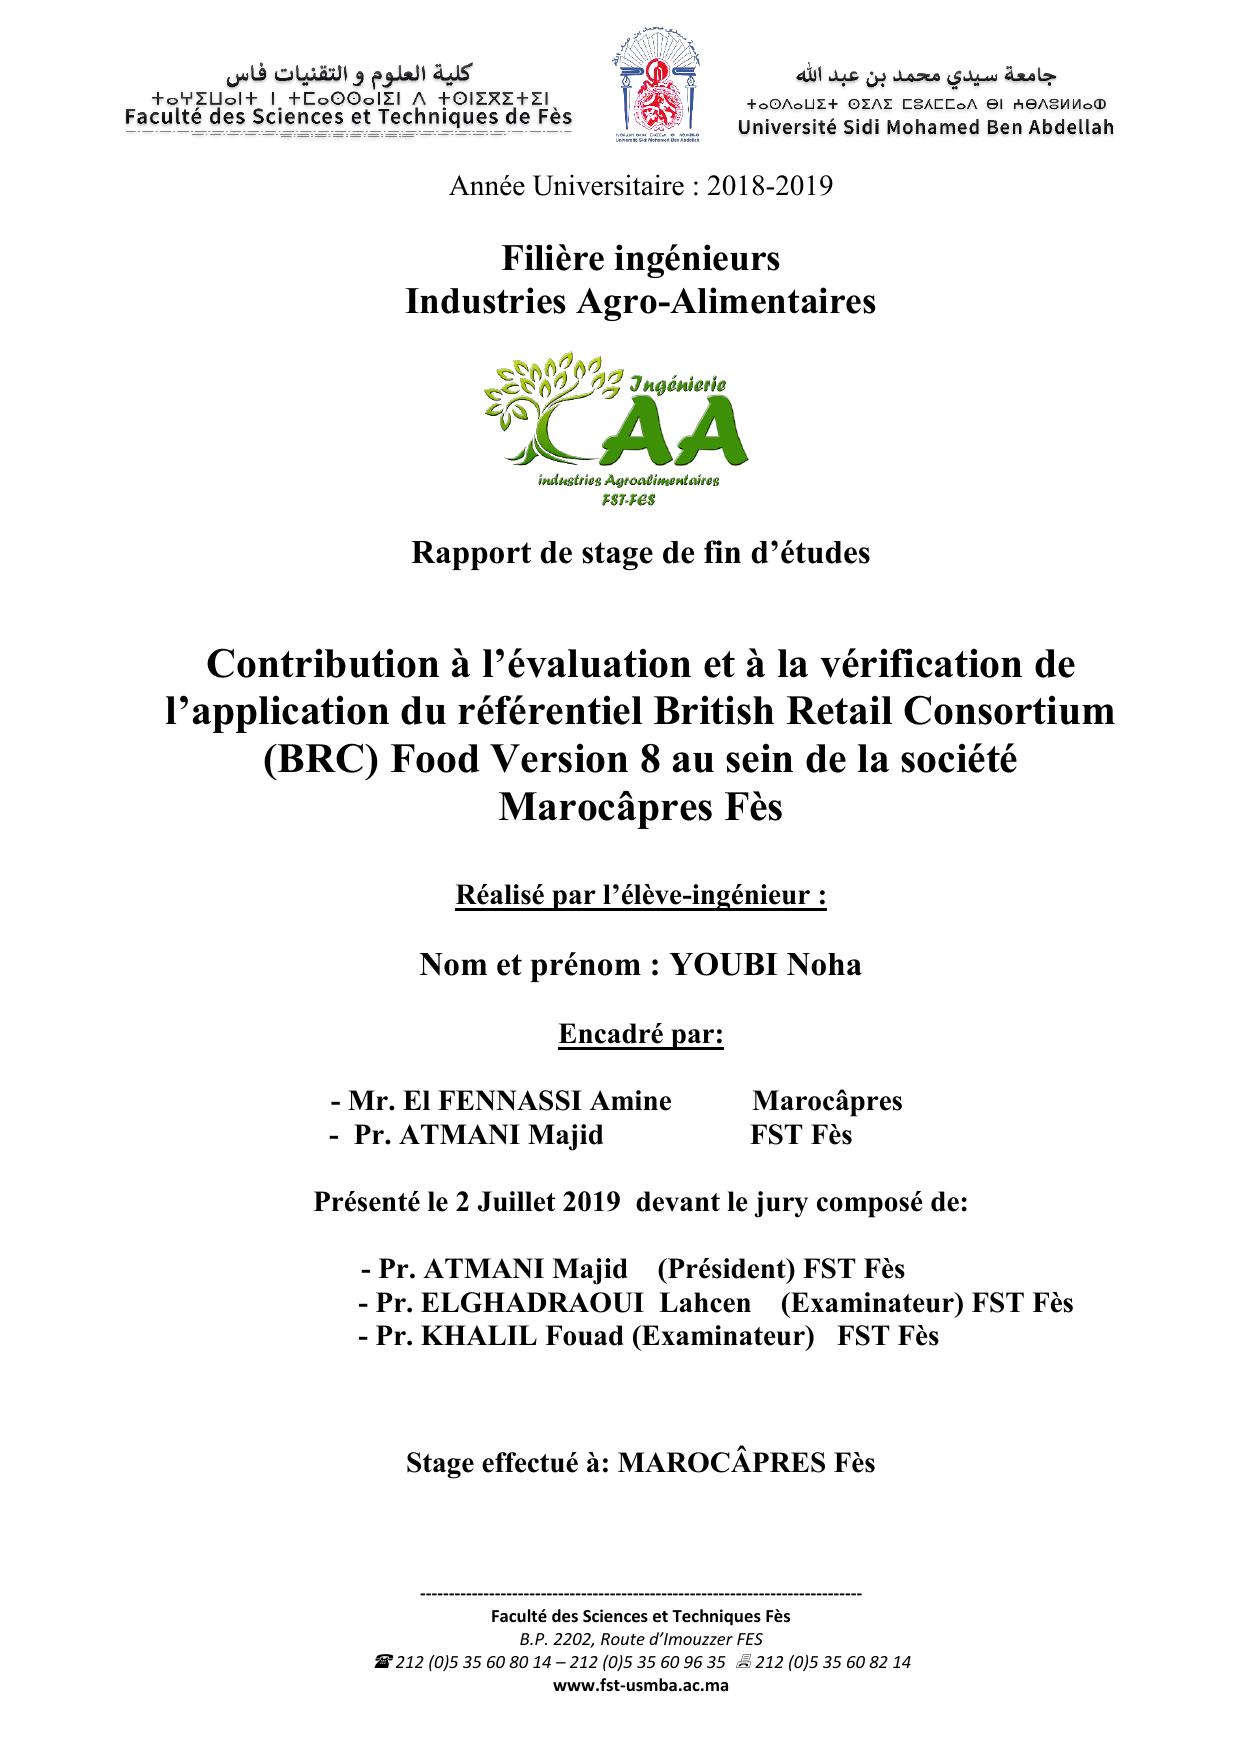 Contribution à l’évaluation et à la vérification de l’application du référentiel British Retail Consortium (BRC) Food Version 8 au sein de la société Marocâpres Fès